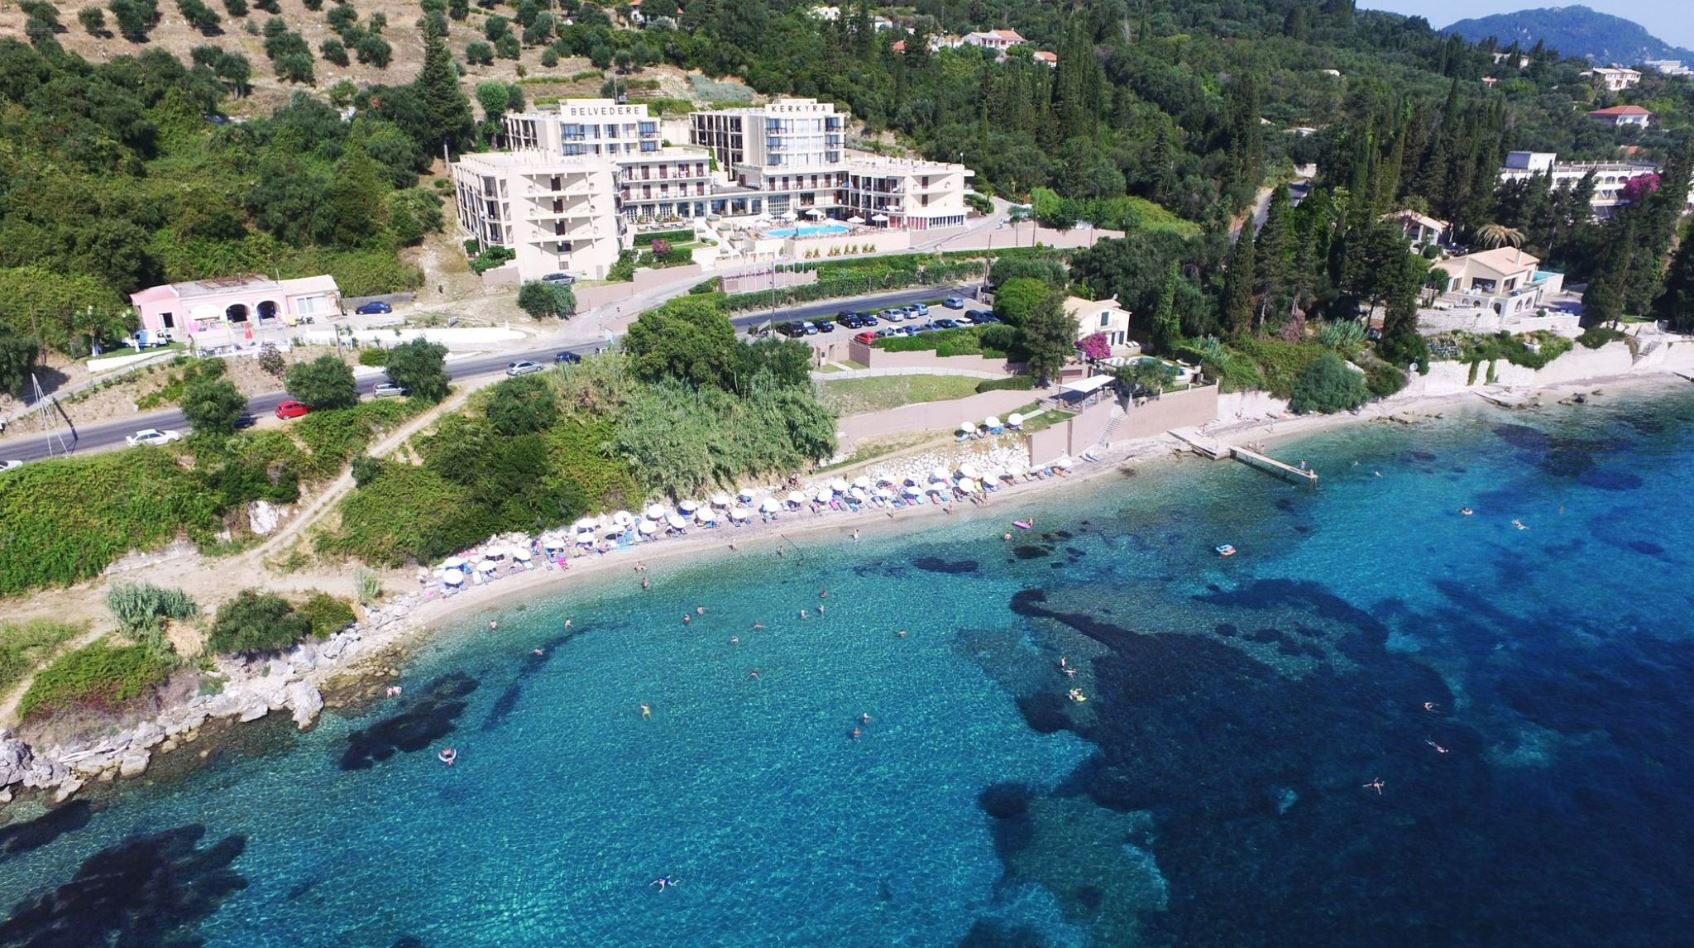 Παραθαλάσσιο all-inclusive 4* ξενοδοχείο στην Κέρκυρα αγόρασε ο Mitsis